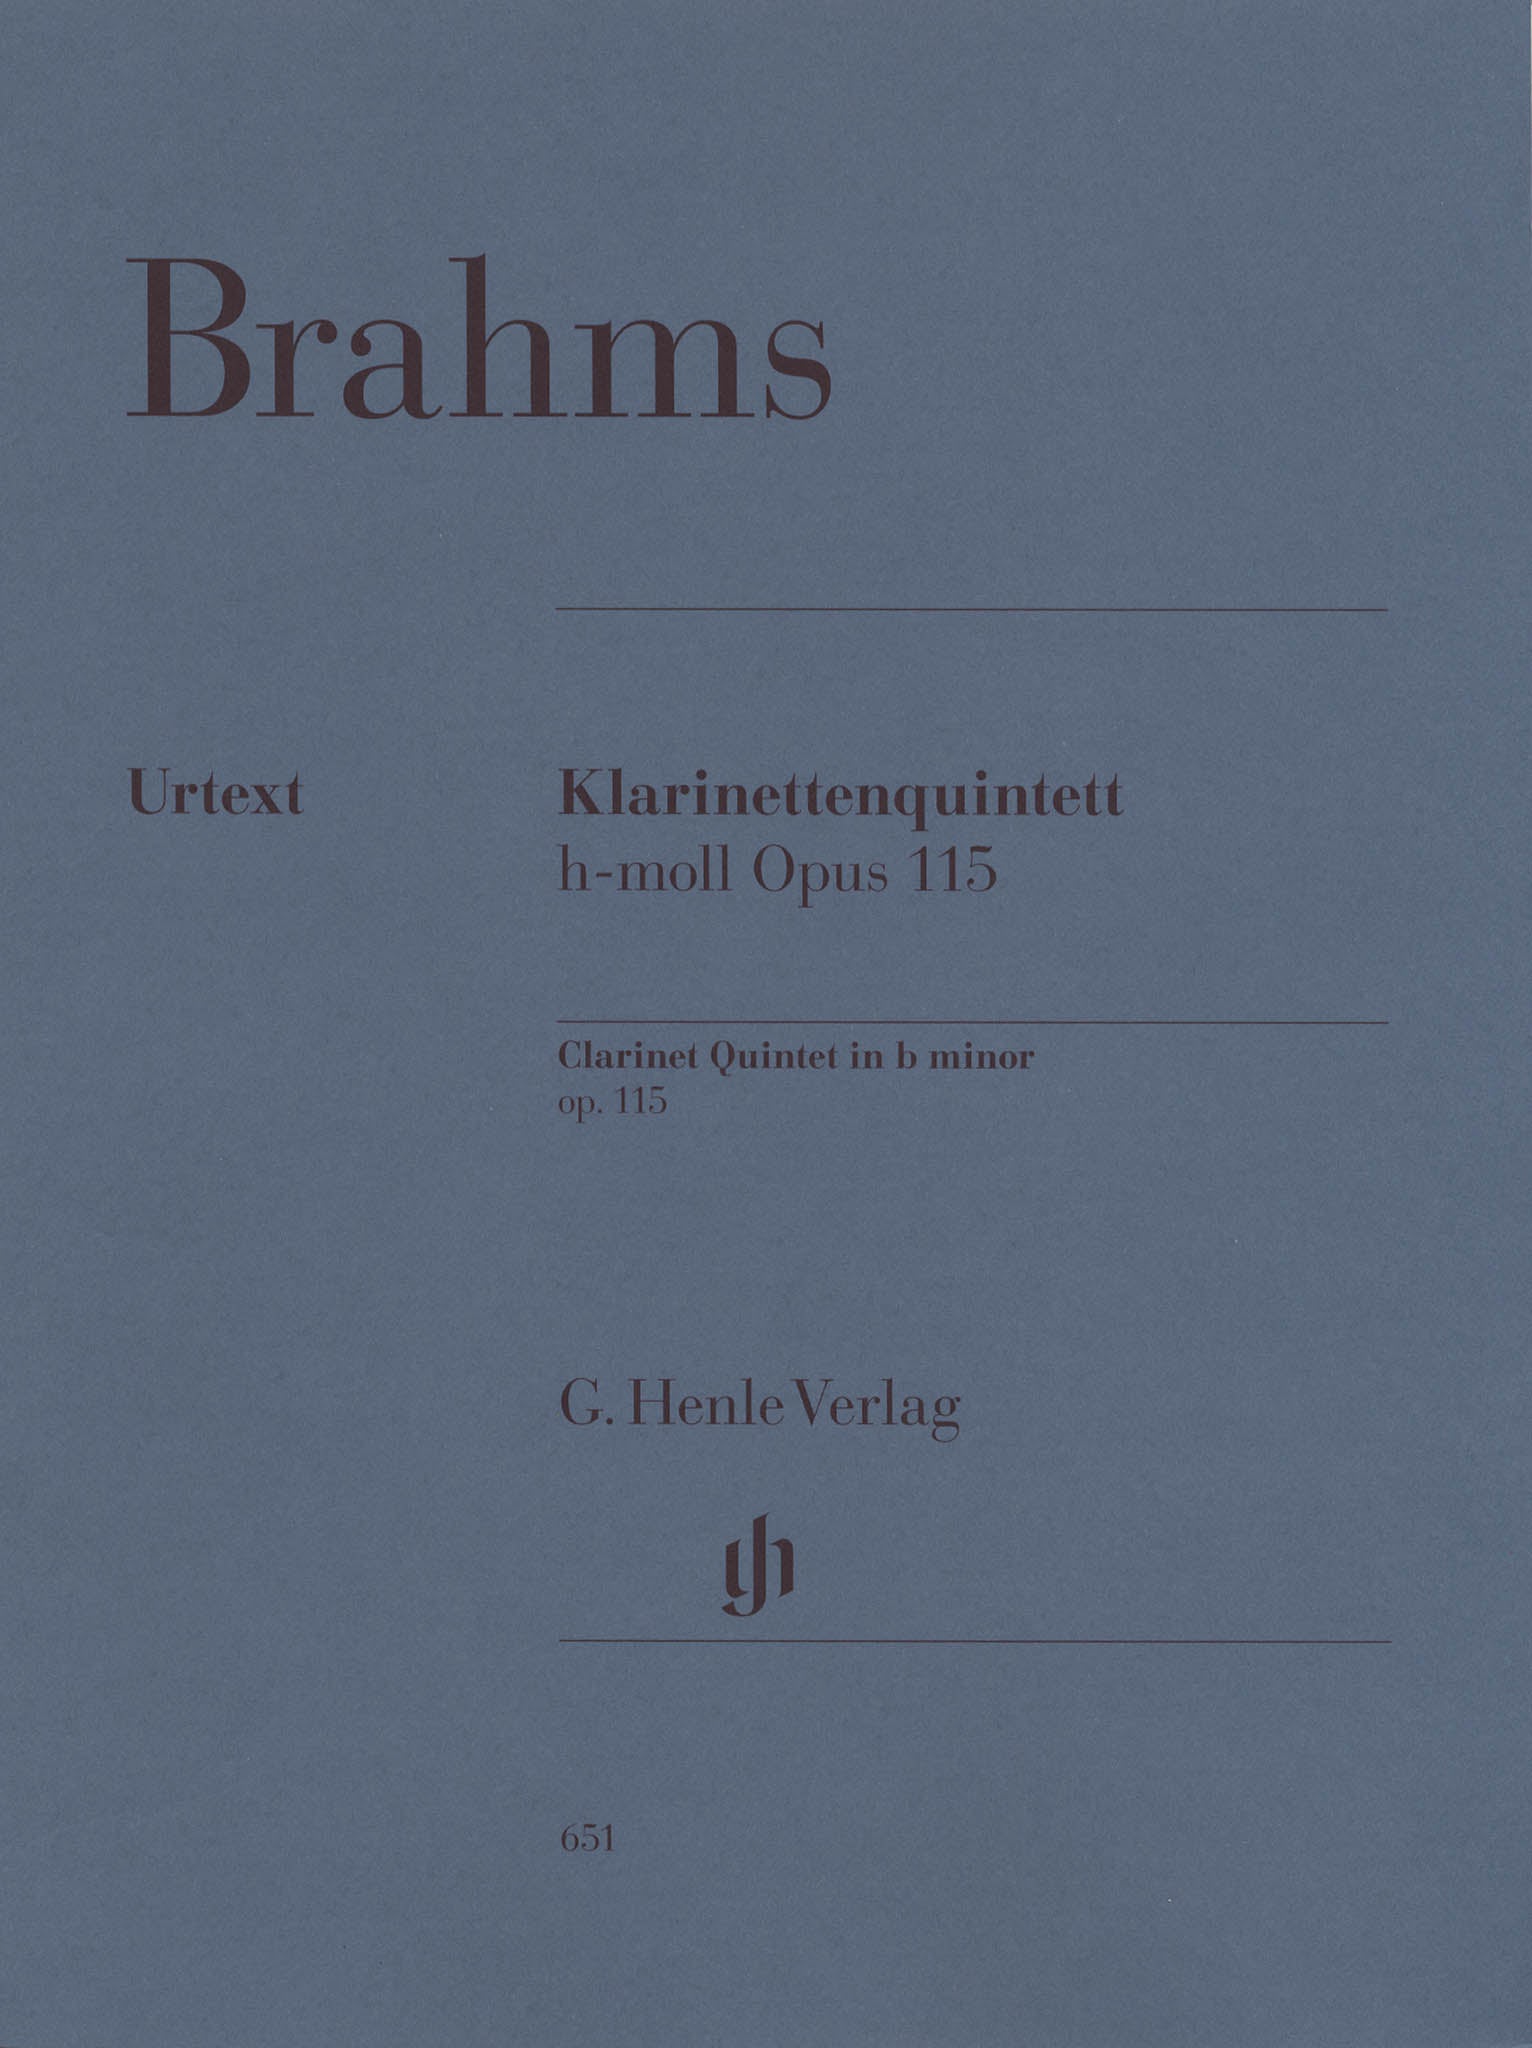 Brahms Clarinet Quintet, Op. 115 Performance parts Cover